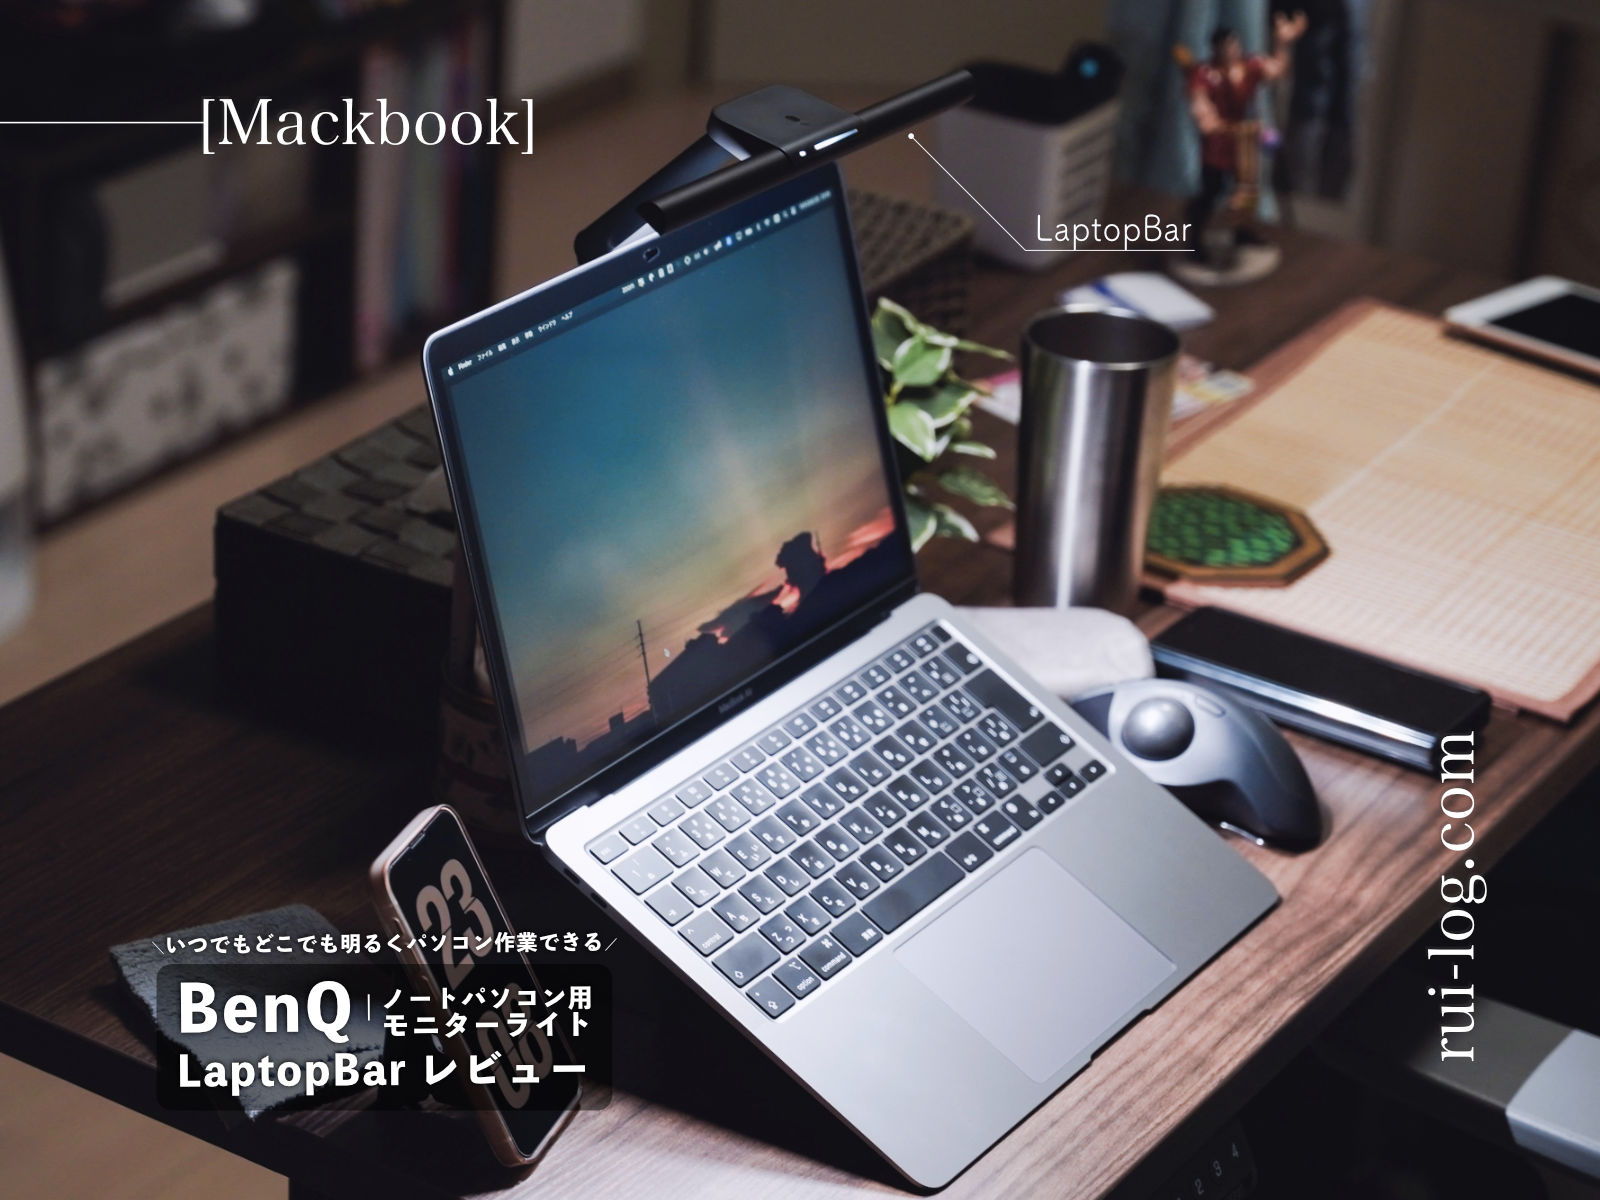 BenQ LaptopBar レビュー。ノートパソコン用モニターライトでいつでもどこでも目に優しい作業環境を構築